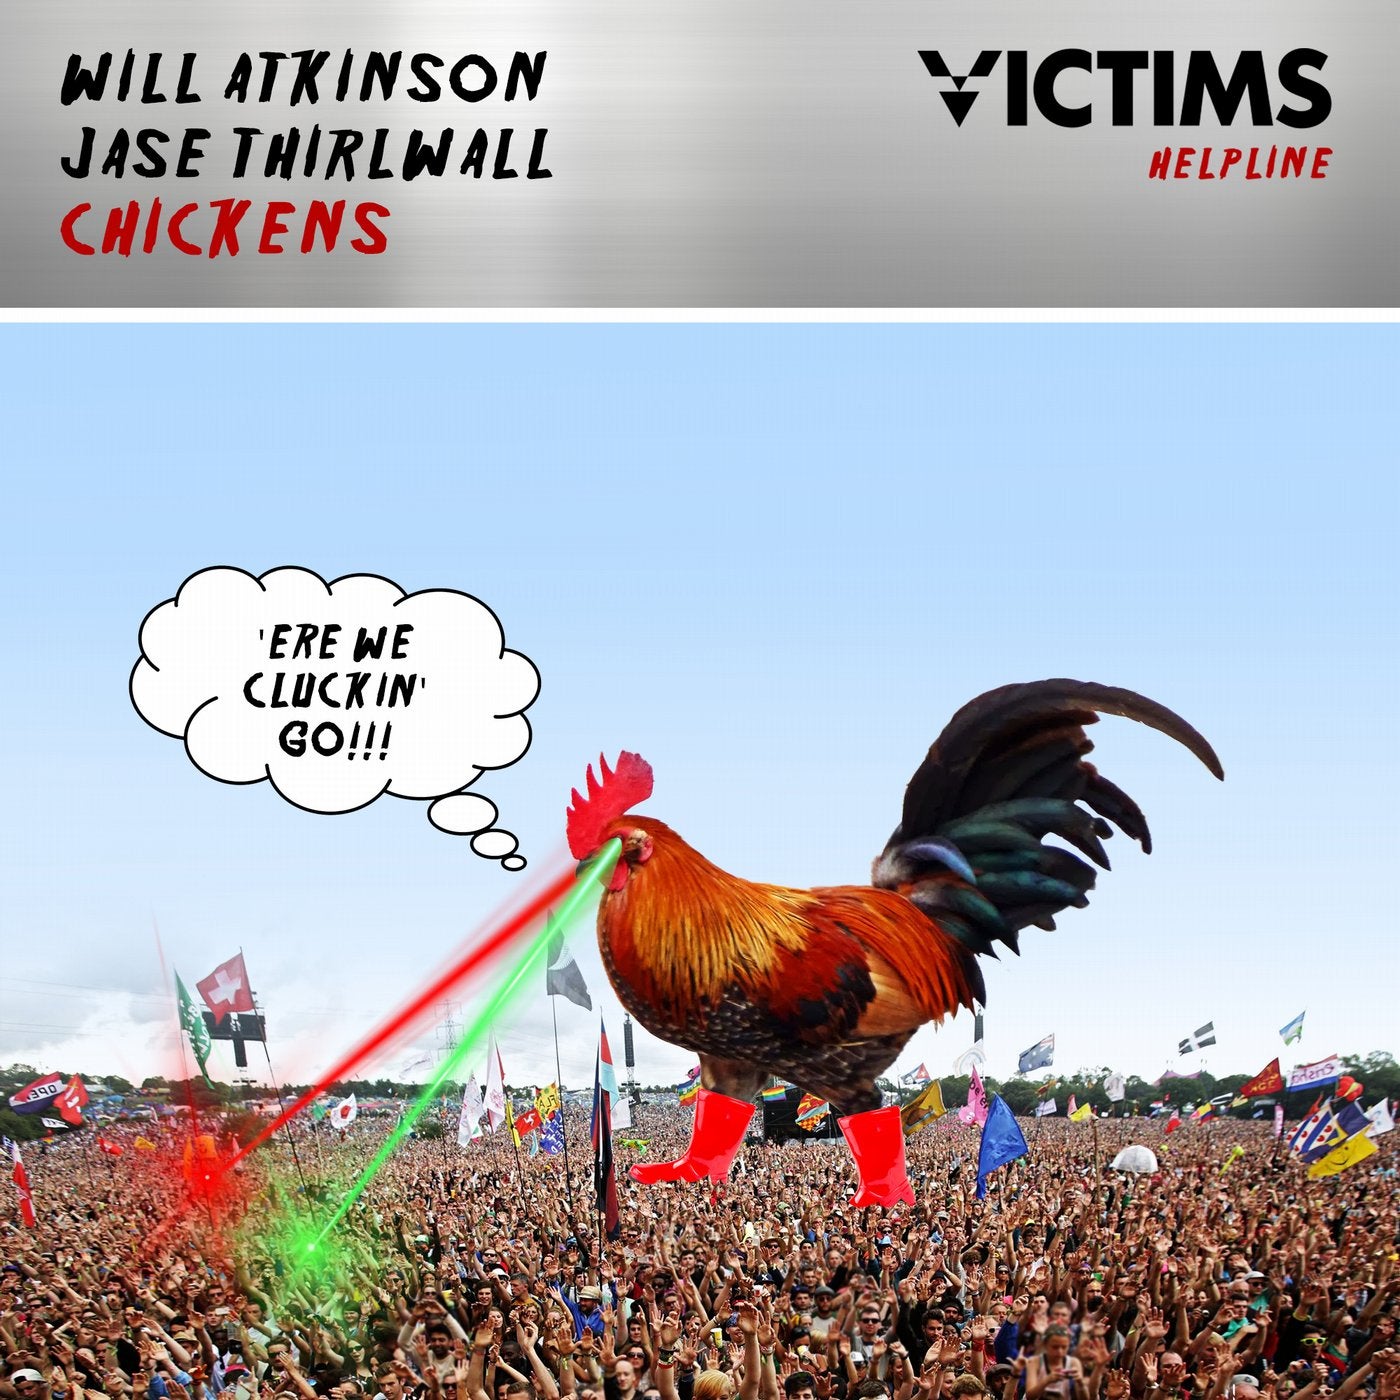 Включи песню чикен. Will Atkinson Chickens. My Chickens песня 2 класс. Курица слушает музыку. Chickens Music Blue Red Box.